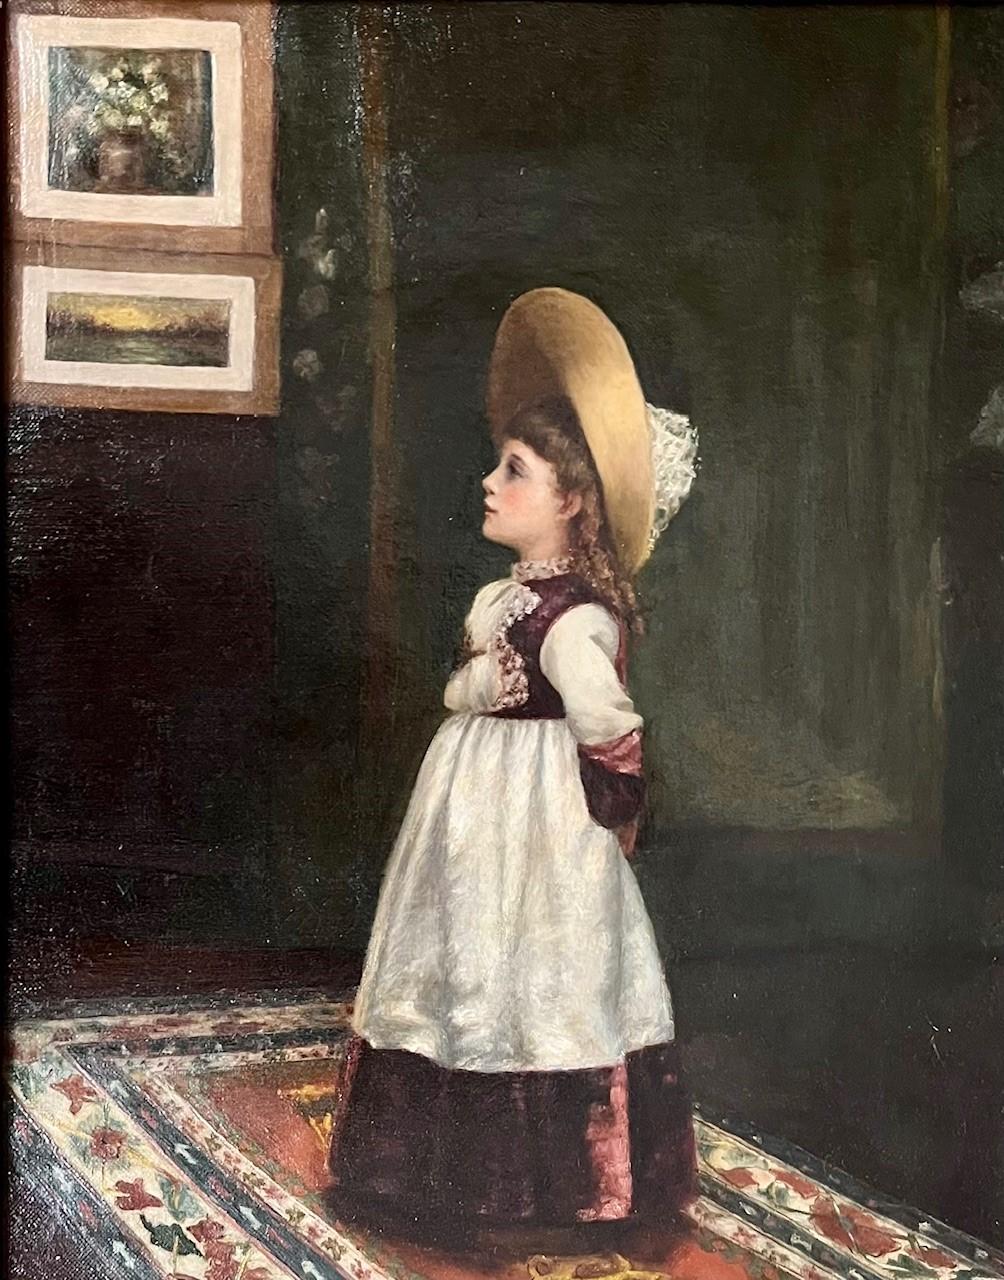 Porträt der amerikanischen Schule des 19. Jahrhunderts, Ölgemälde eines jungen Mädchens.

Wunderschönes antikes Porträt eines bezaubernden kleinen Mädchens, das in einem in warmen Tönen gehaltenen Raum mit Orientteppich und Wandteppich steht. Sie